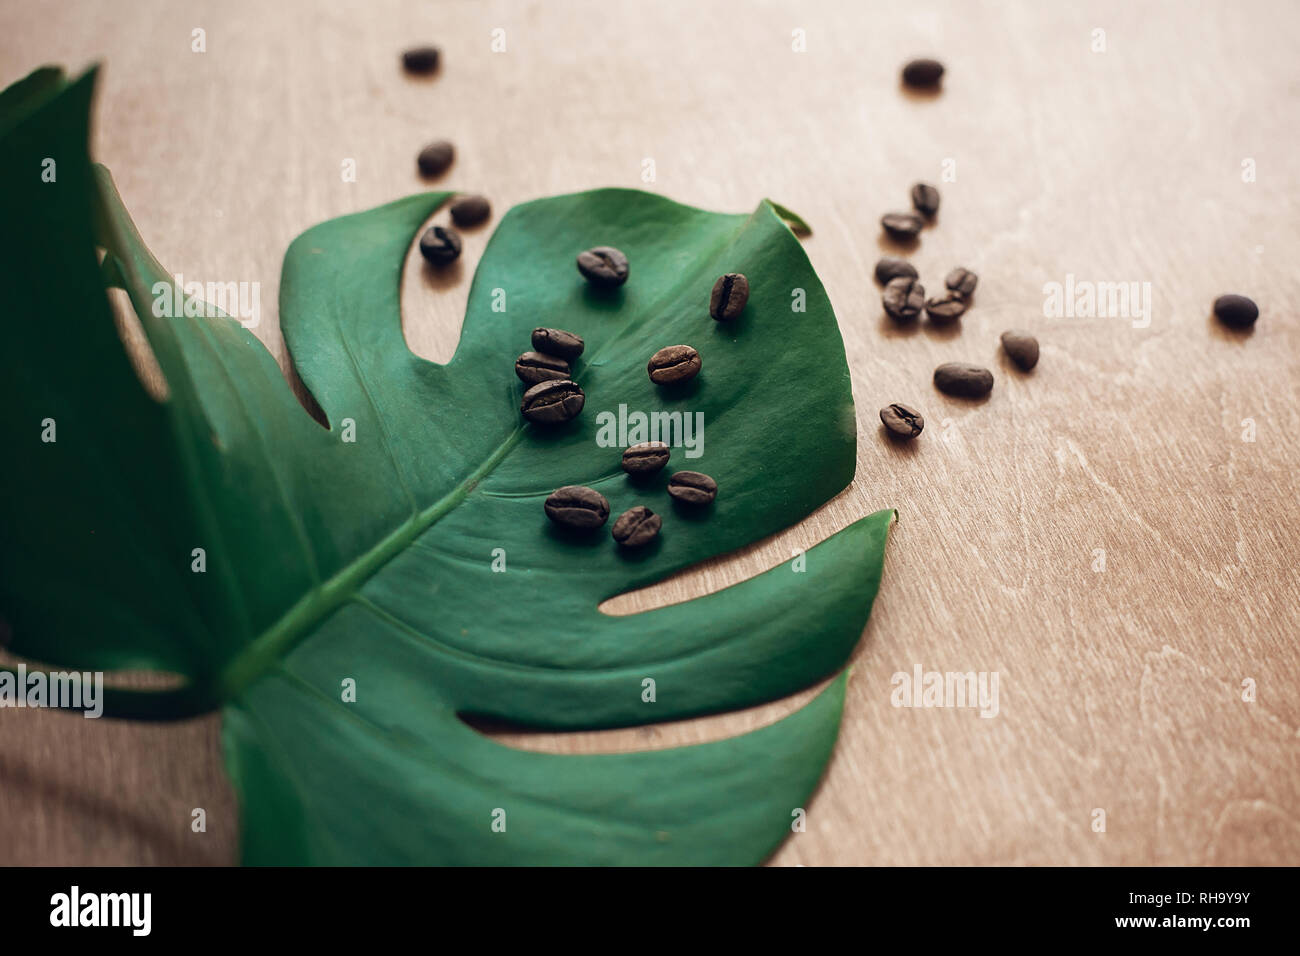 Stilvolle Bild von gerösteten Kaffeebohnen auf Grün monstera Blatt auf rustikalem Holz in Licht. Eco Kaffeebohnen Konzept, morgen Hot Drink mit Energie und Arom Stockfoto